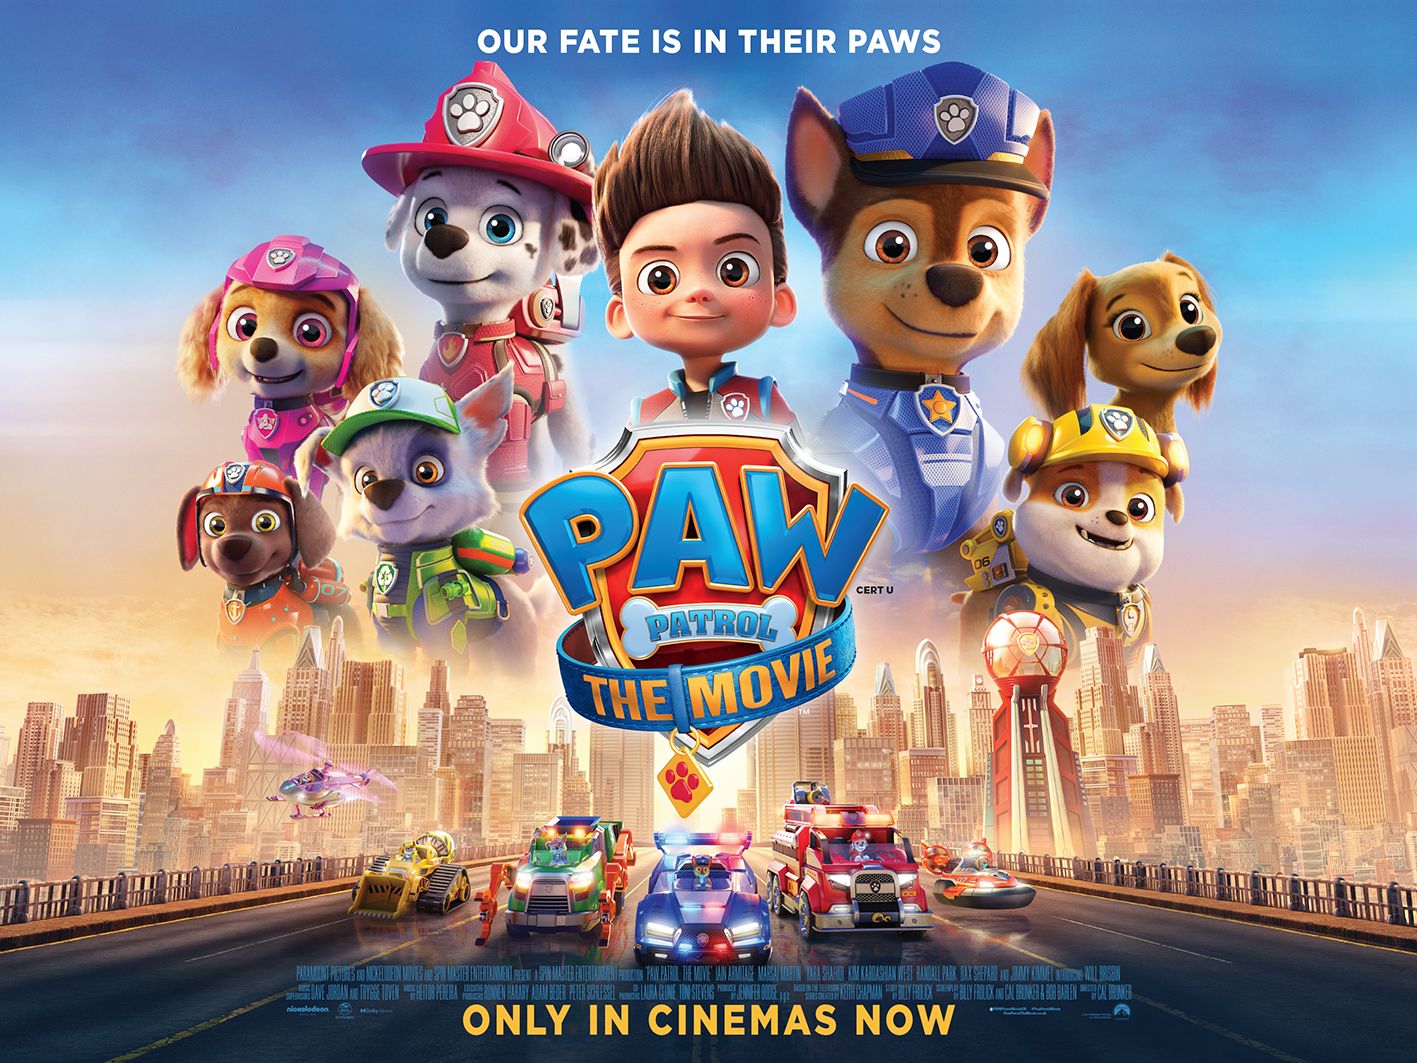 PAW Patrol: The Movie